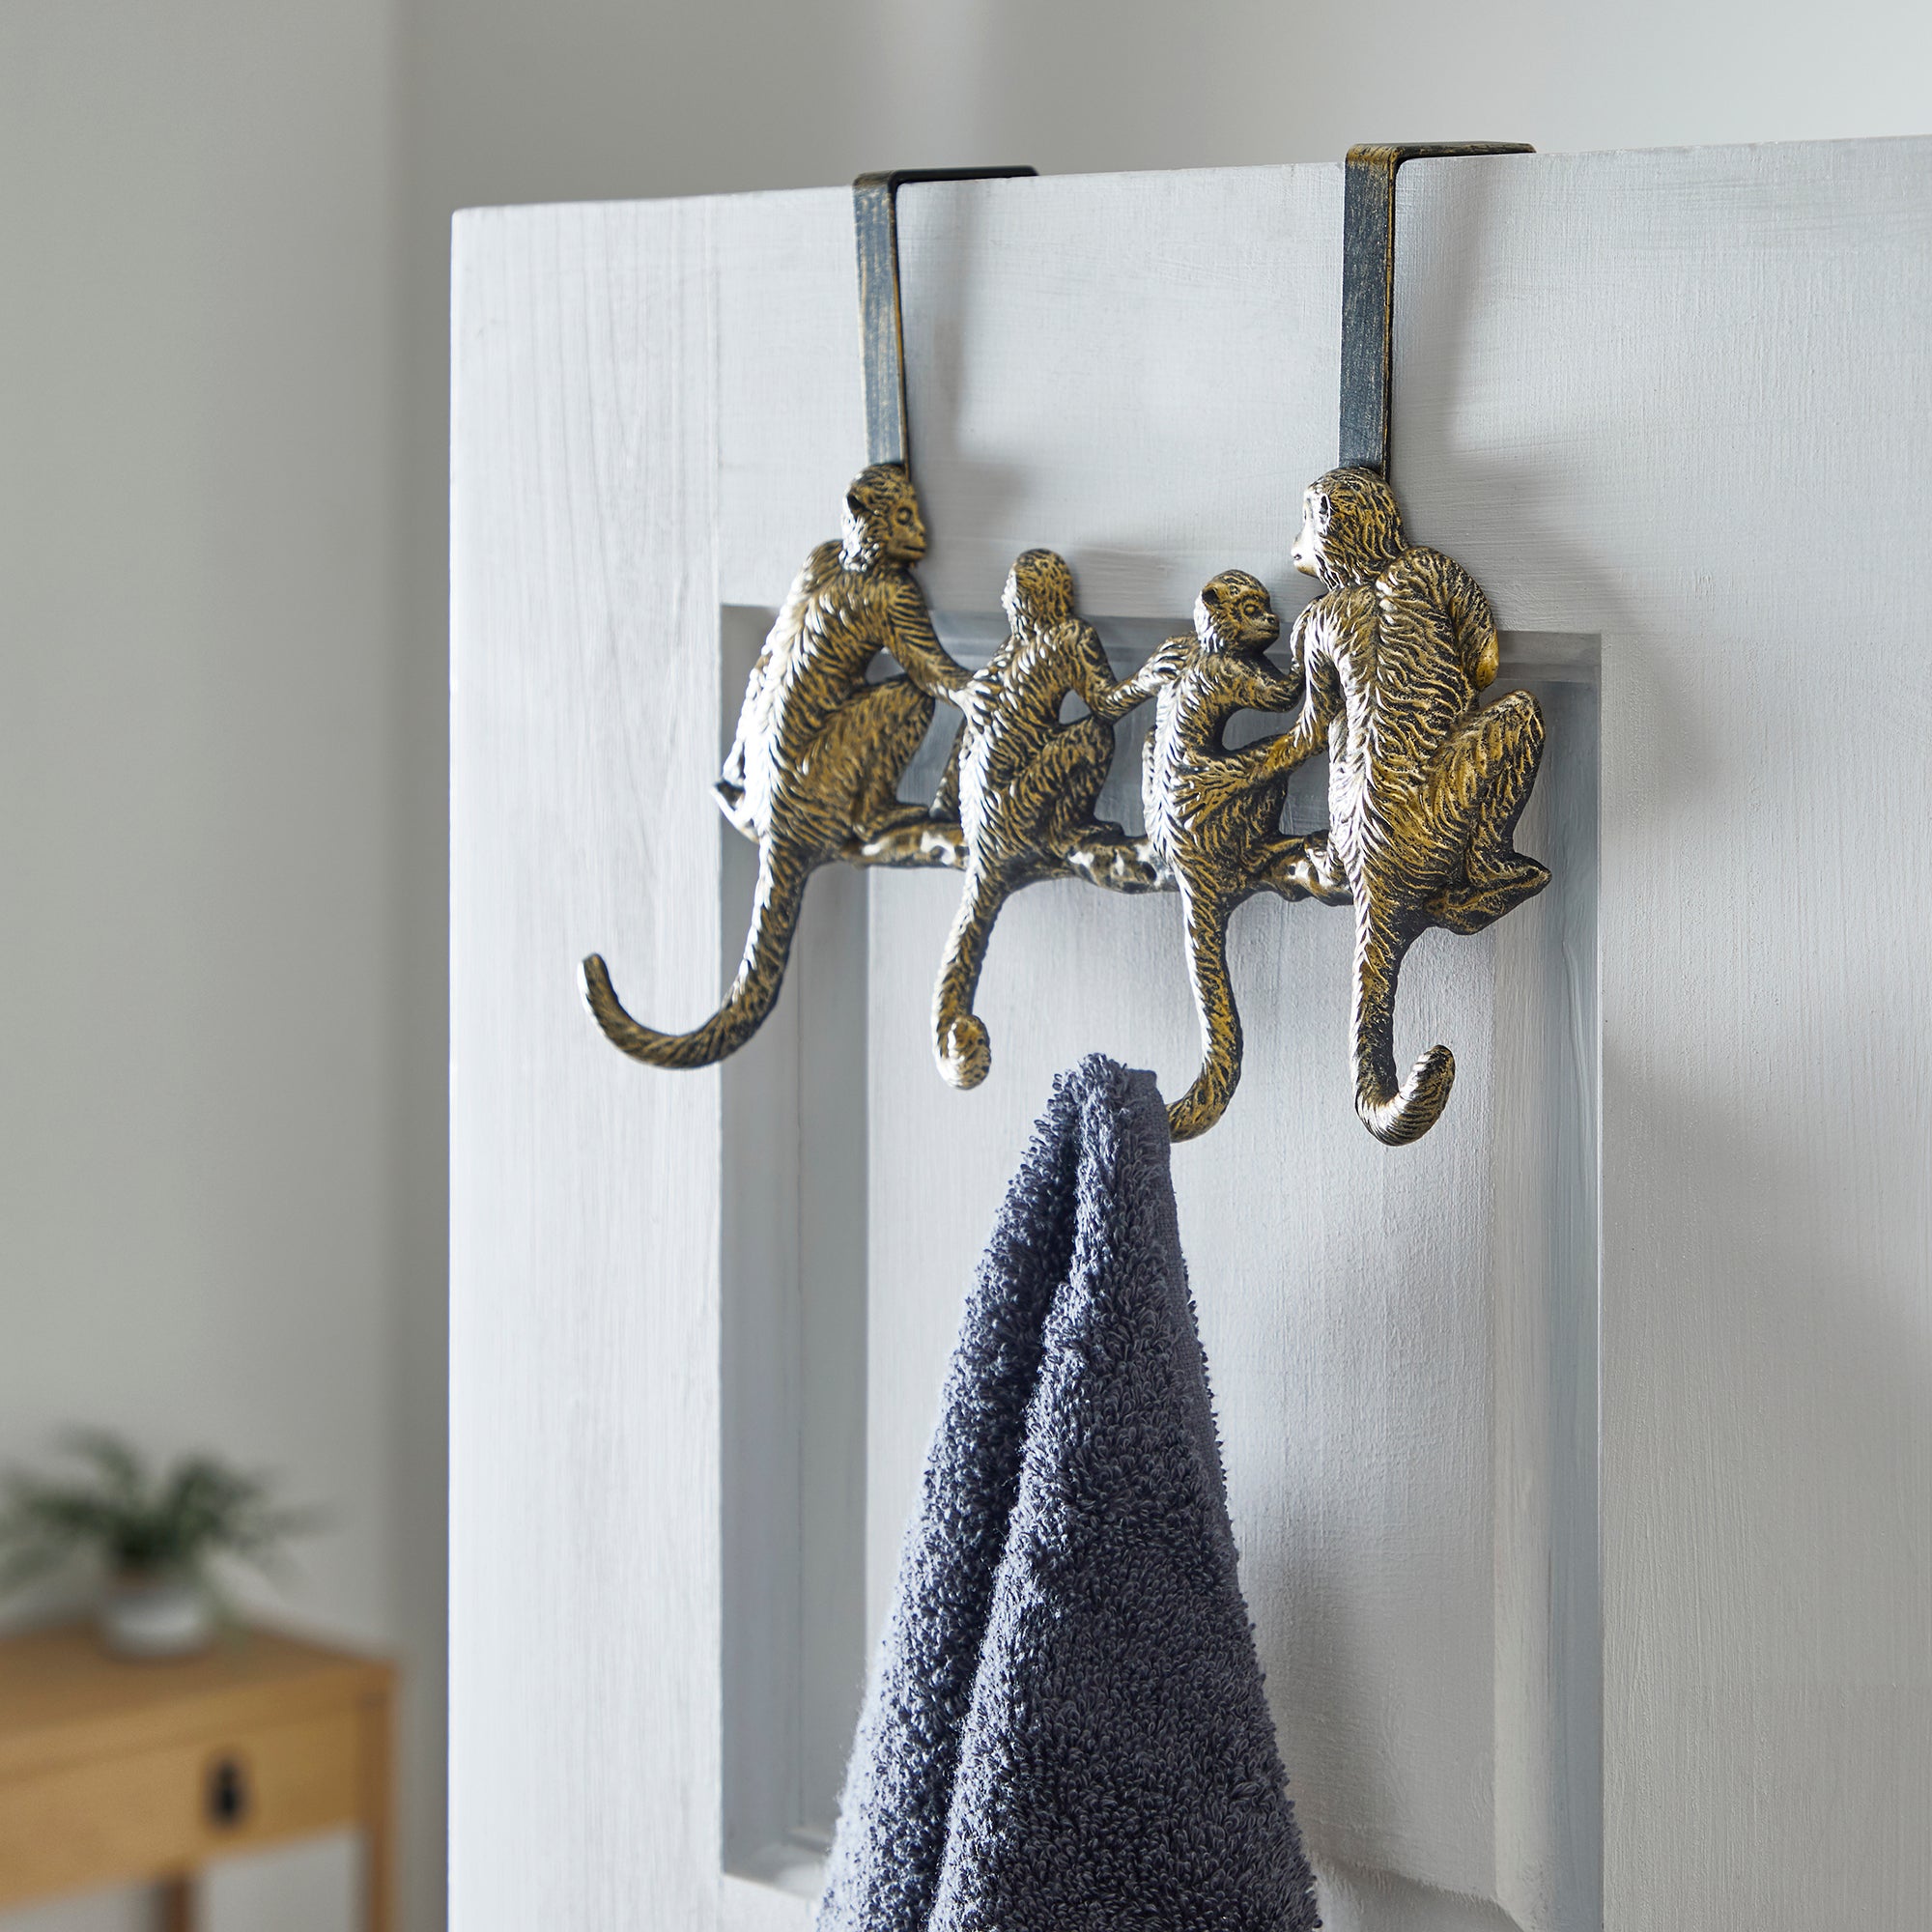 Over The Door Hook Door Hanger, Over The Door Towel Rack with 6 Coat Hooks  for Hanging, Antique Copper